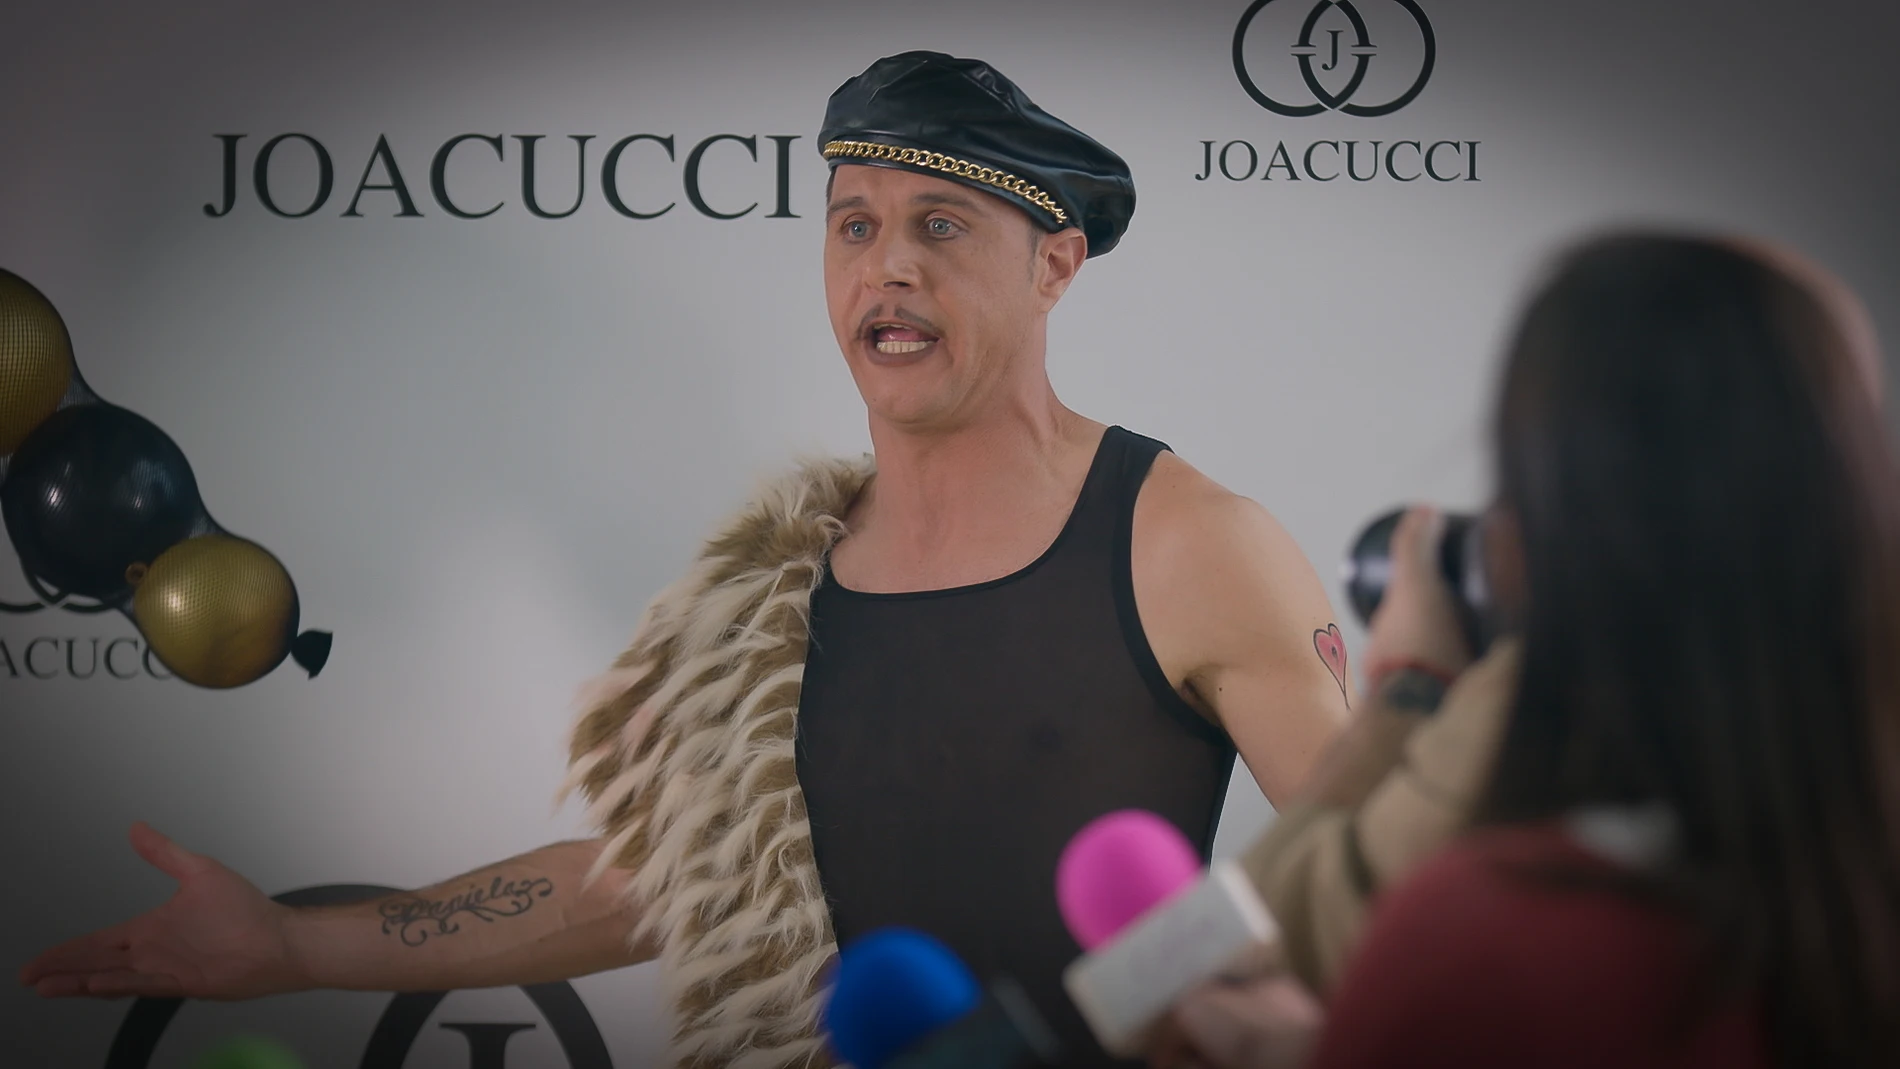 Joacucci, el polémico y excéntrico diseñador que revoluciona el mundo de la moda